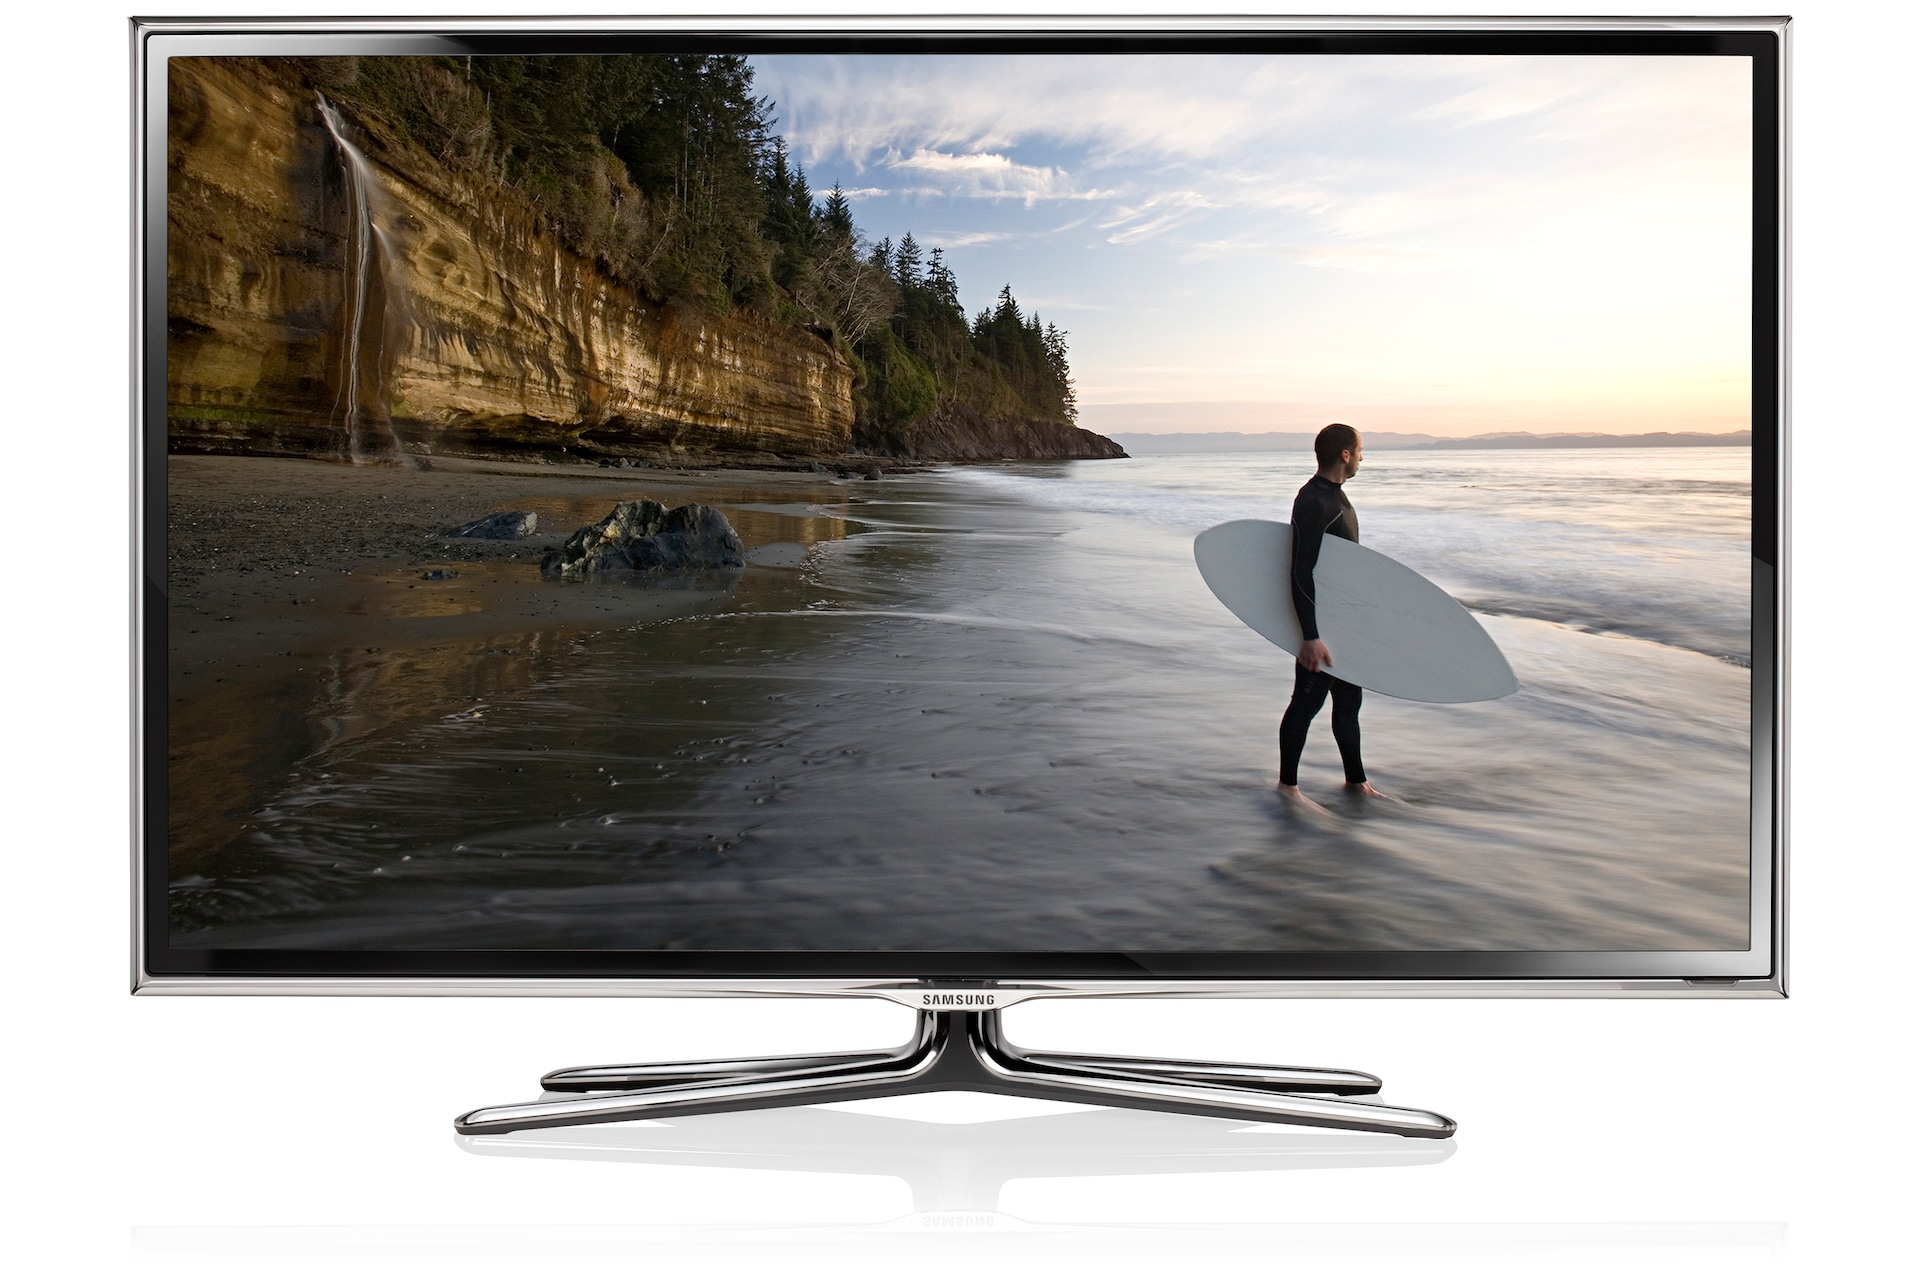 55" ES6800  Smart 3D Full HD LED TV